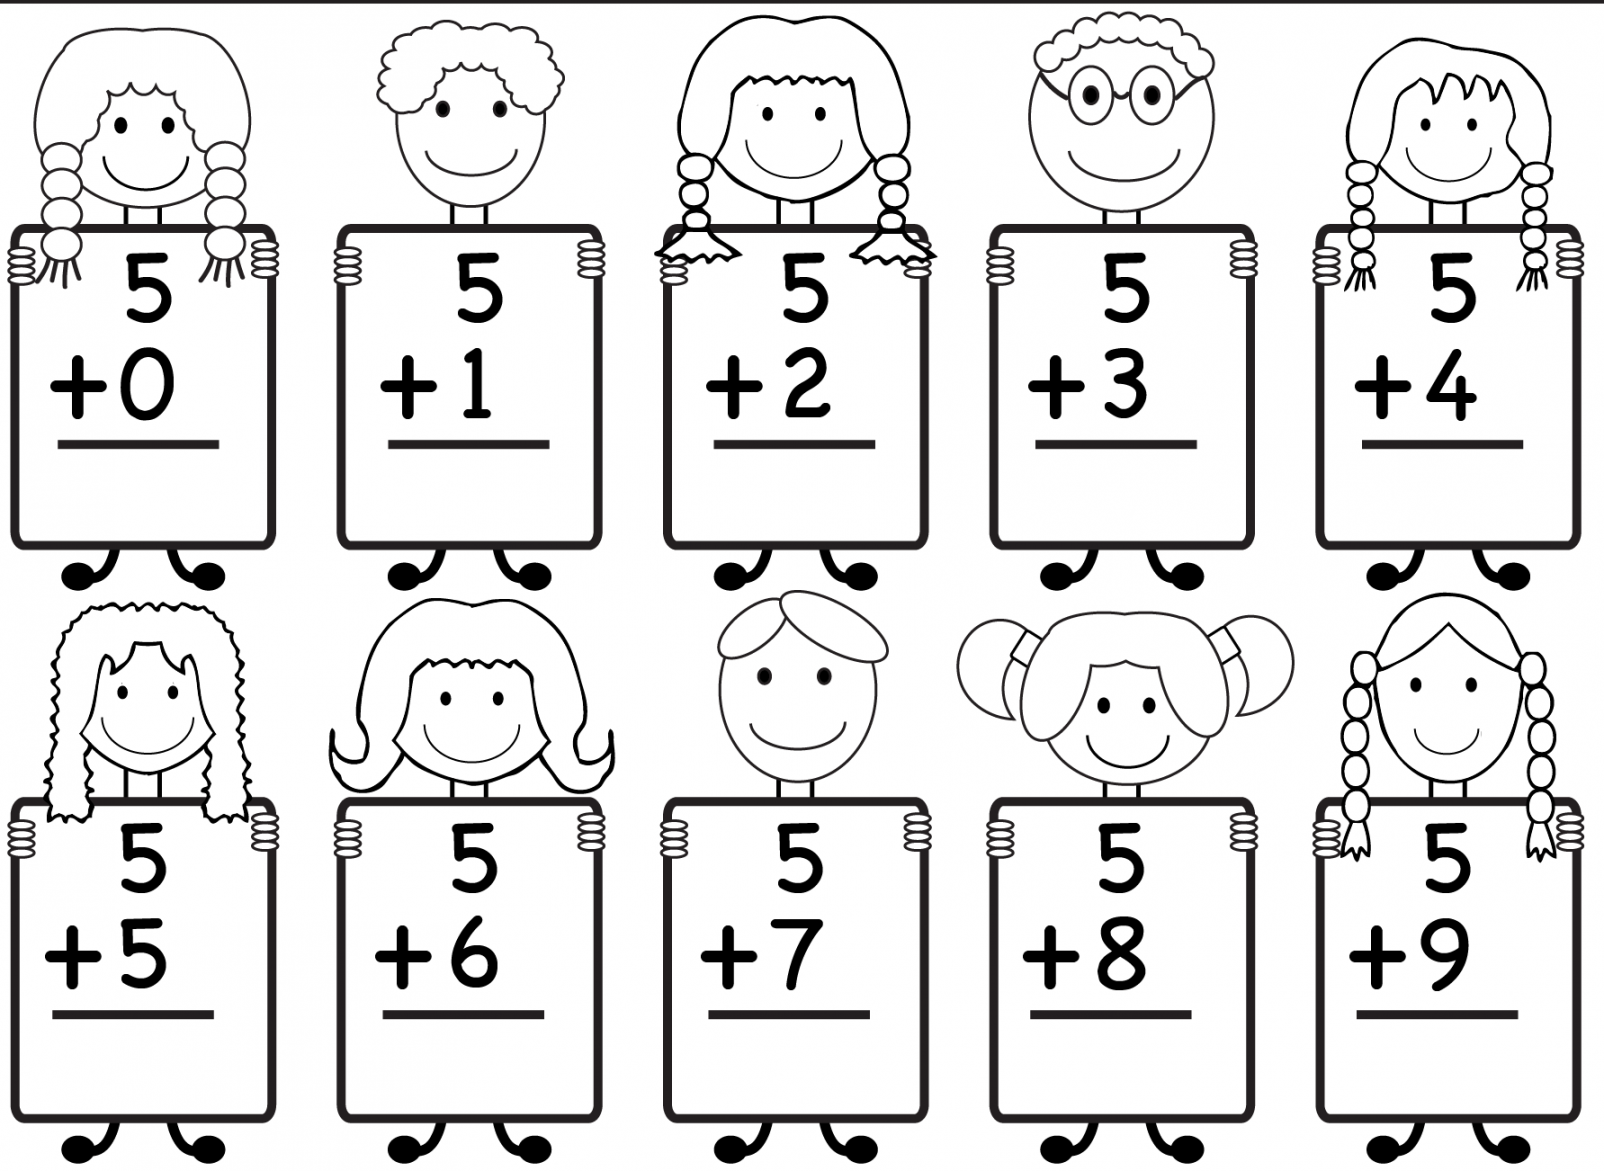 Free Printable Worksheets For Kindergarten - Printable - Free Printable Kindergarten Math Worksheets